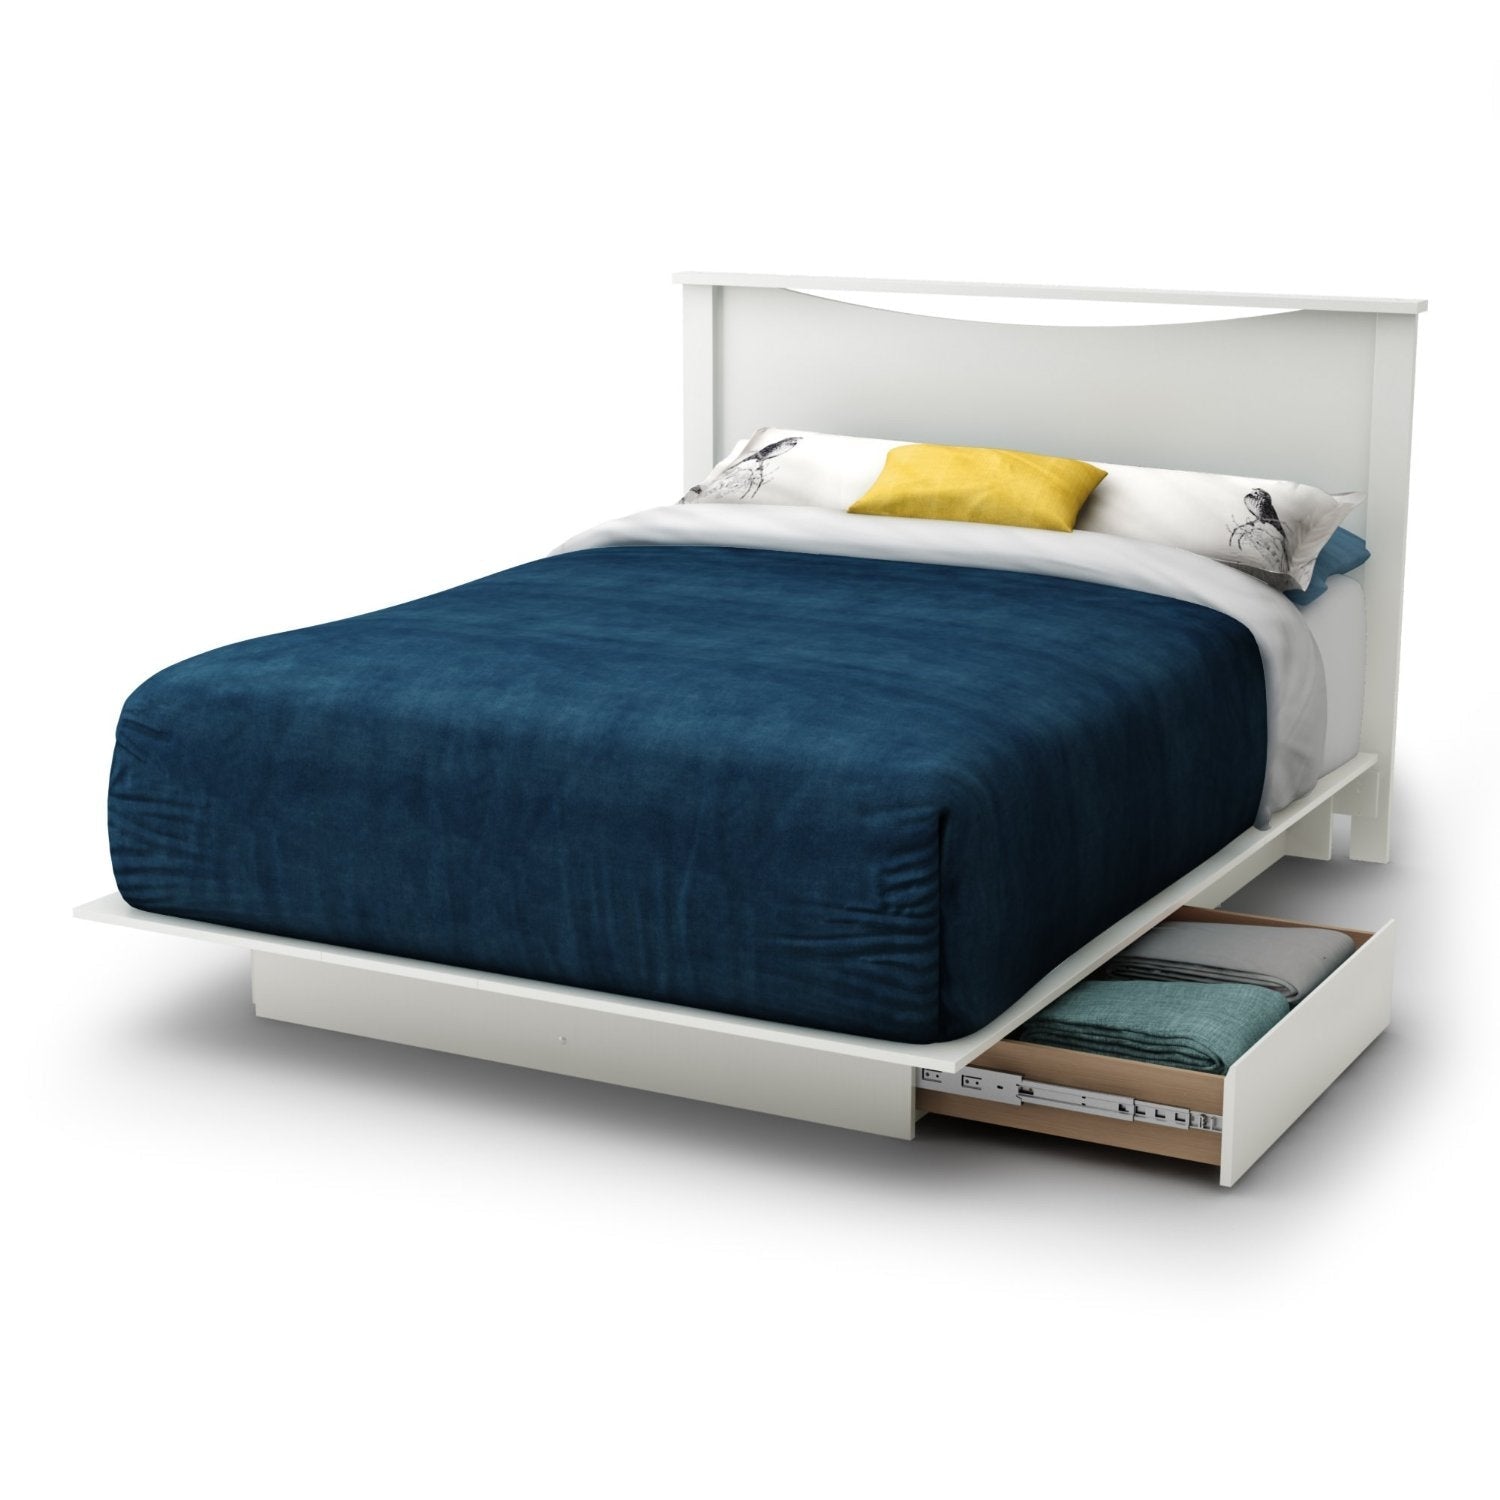 Bedroom > Bed Frames > Platform Beds - Full Size White Modern Platform Bed Frame With 2 Storage Drawers